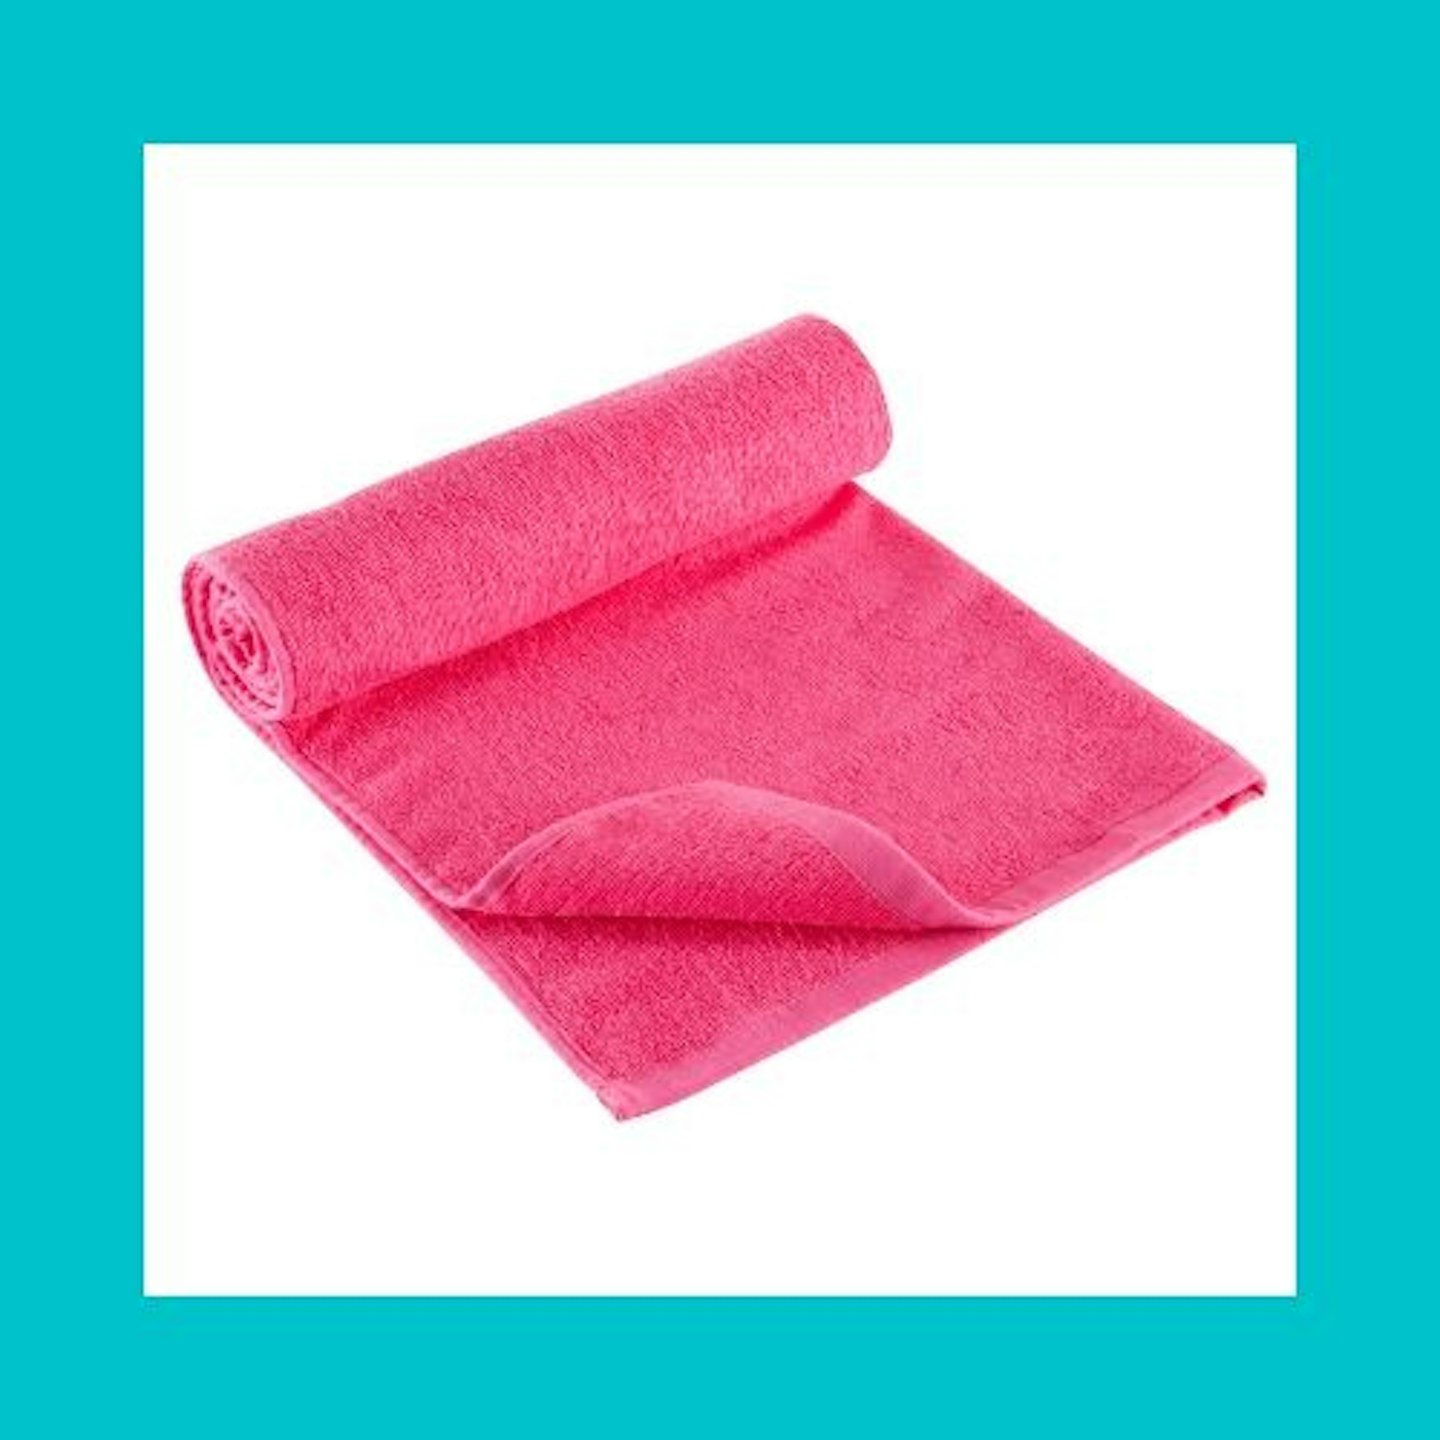  BOBOR Gym Towels Set, Microfiber Sports Towel for Men